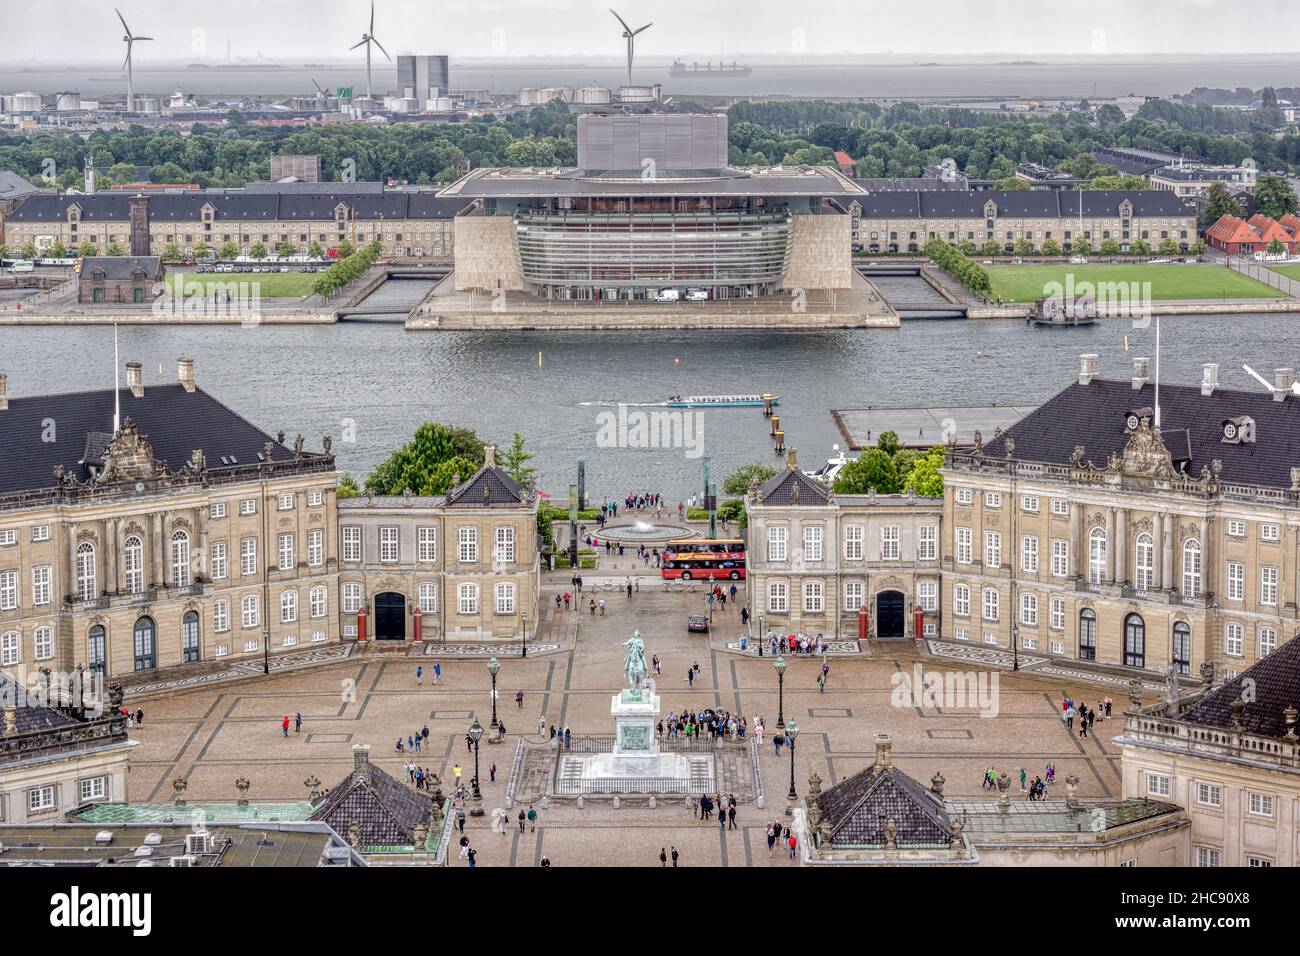 Kopenhagener Skyline des Opernhauses und des Königspalastes Amalienborg. 13. Juli 2016 Stockfoto